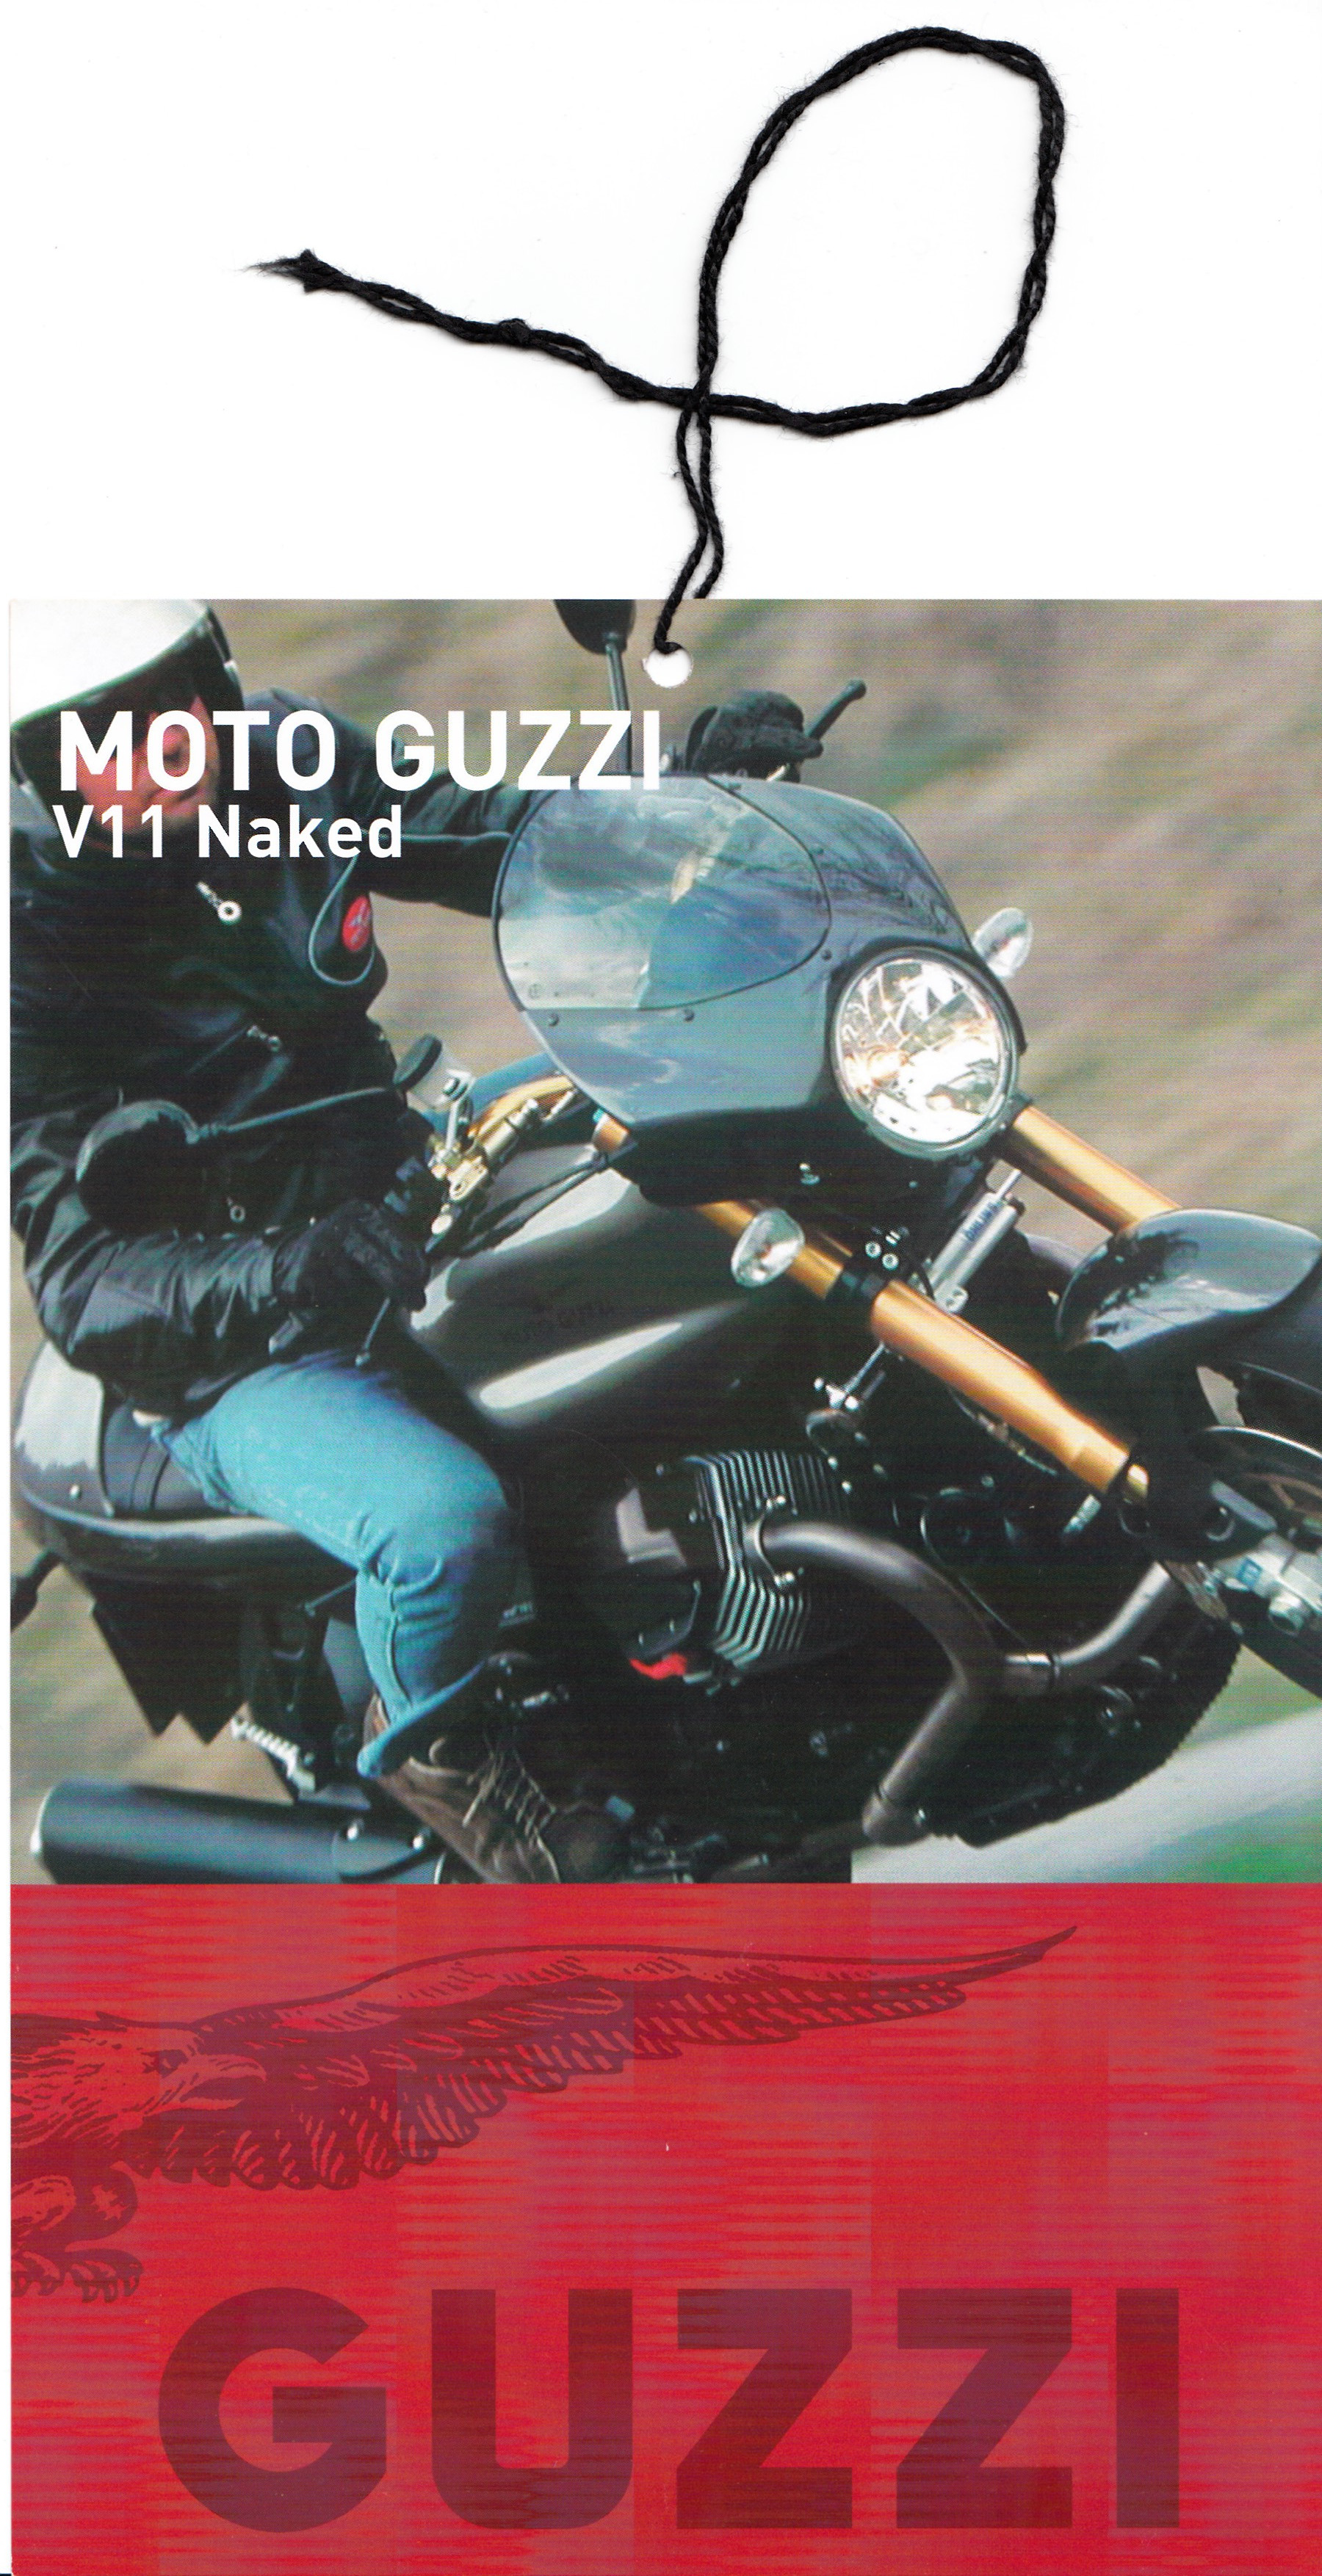 Tag - Moto Guzzi V11 Naked